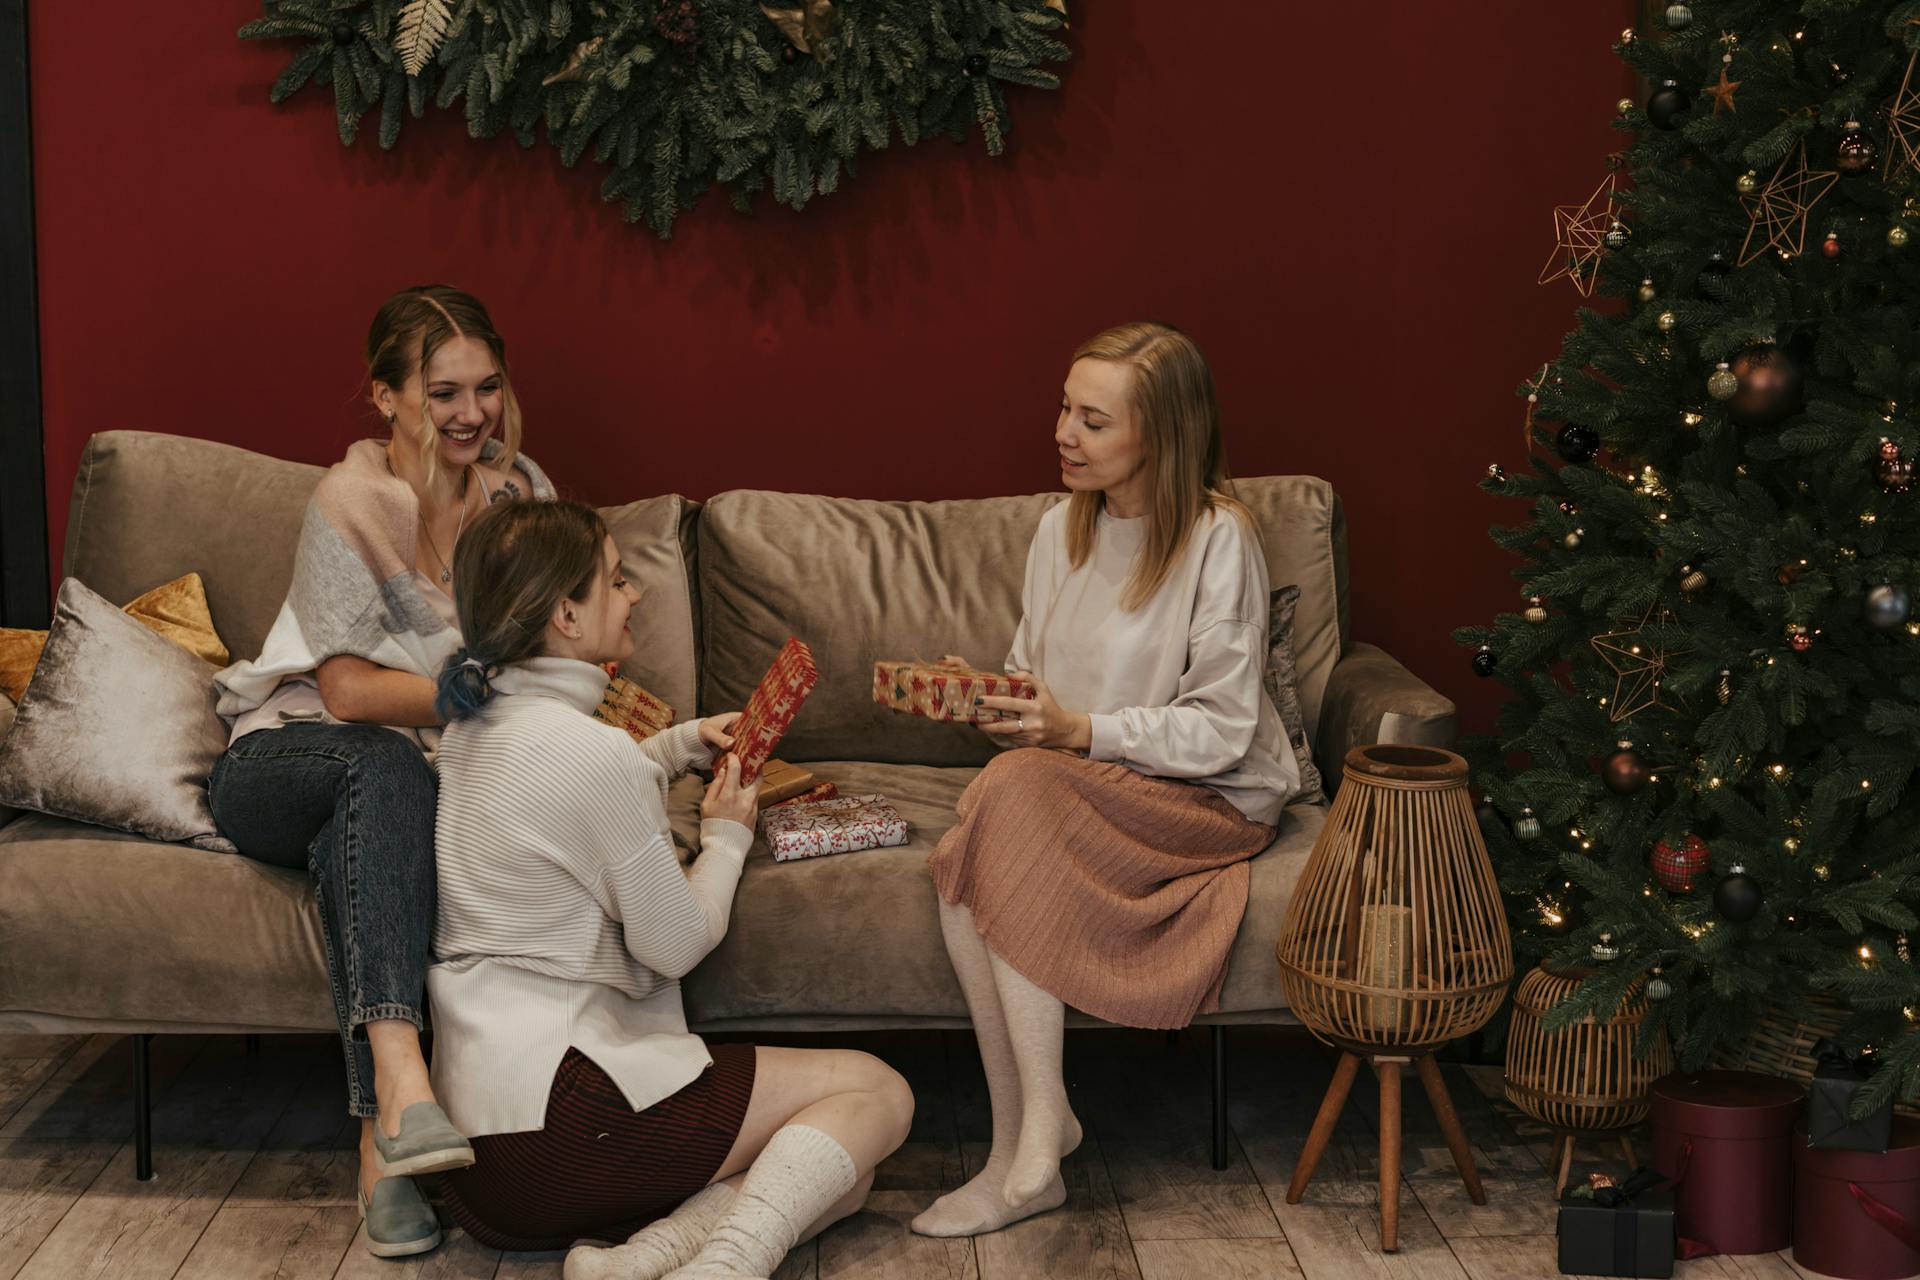 Un groupe de femmes échangeant des cadeaux de Noël | Source : Pexels